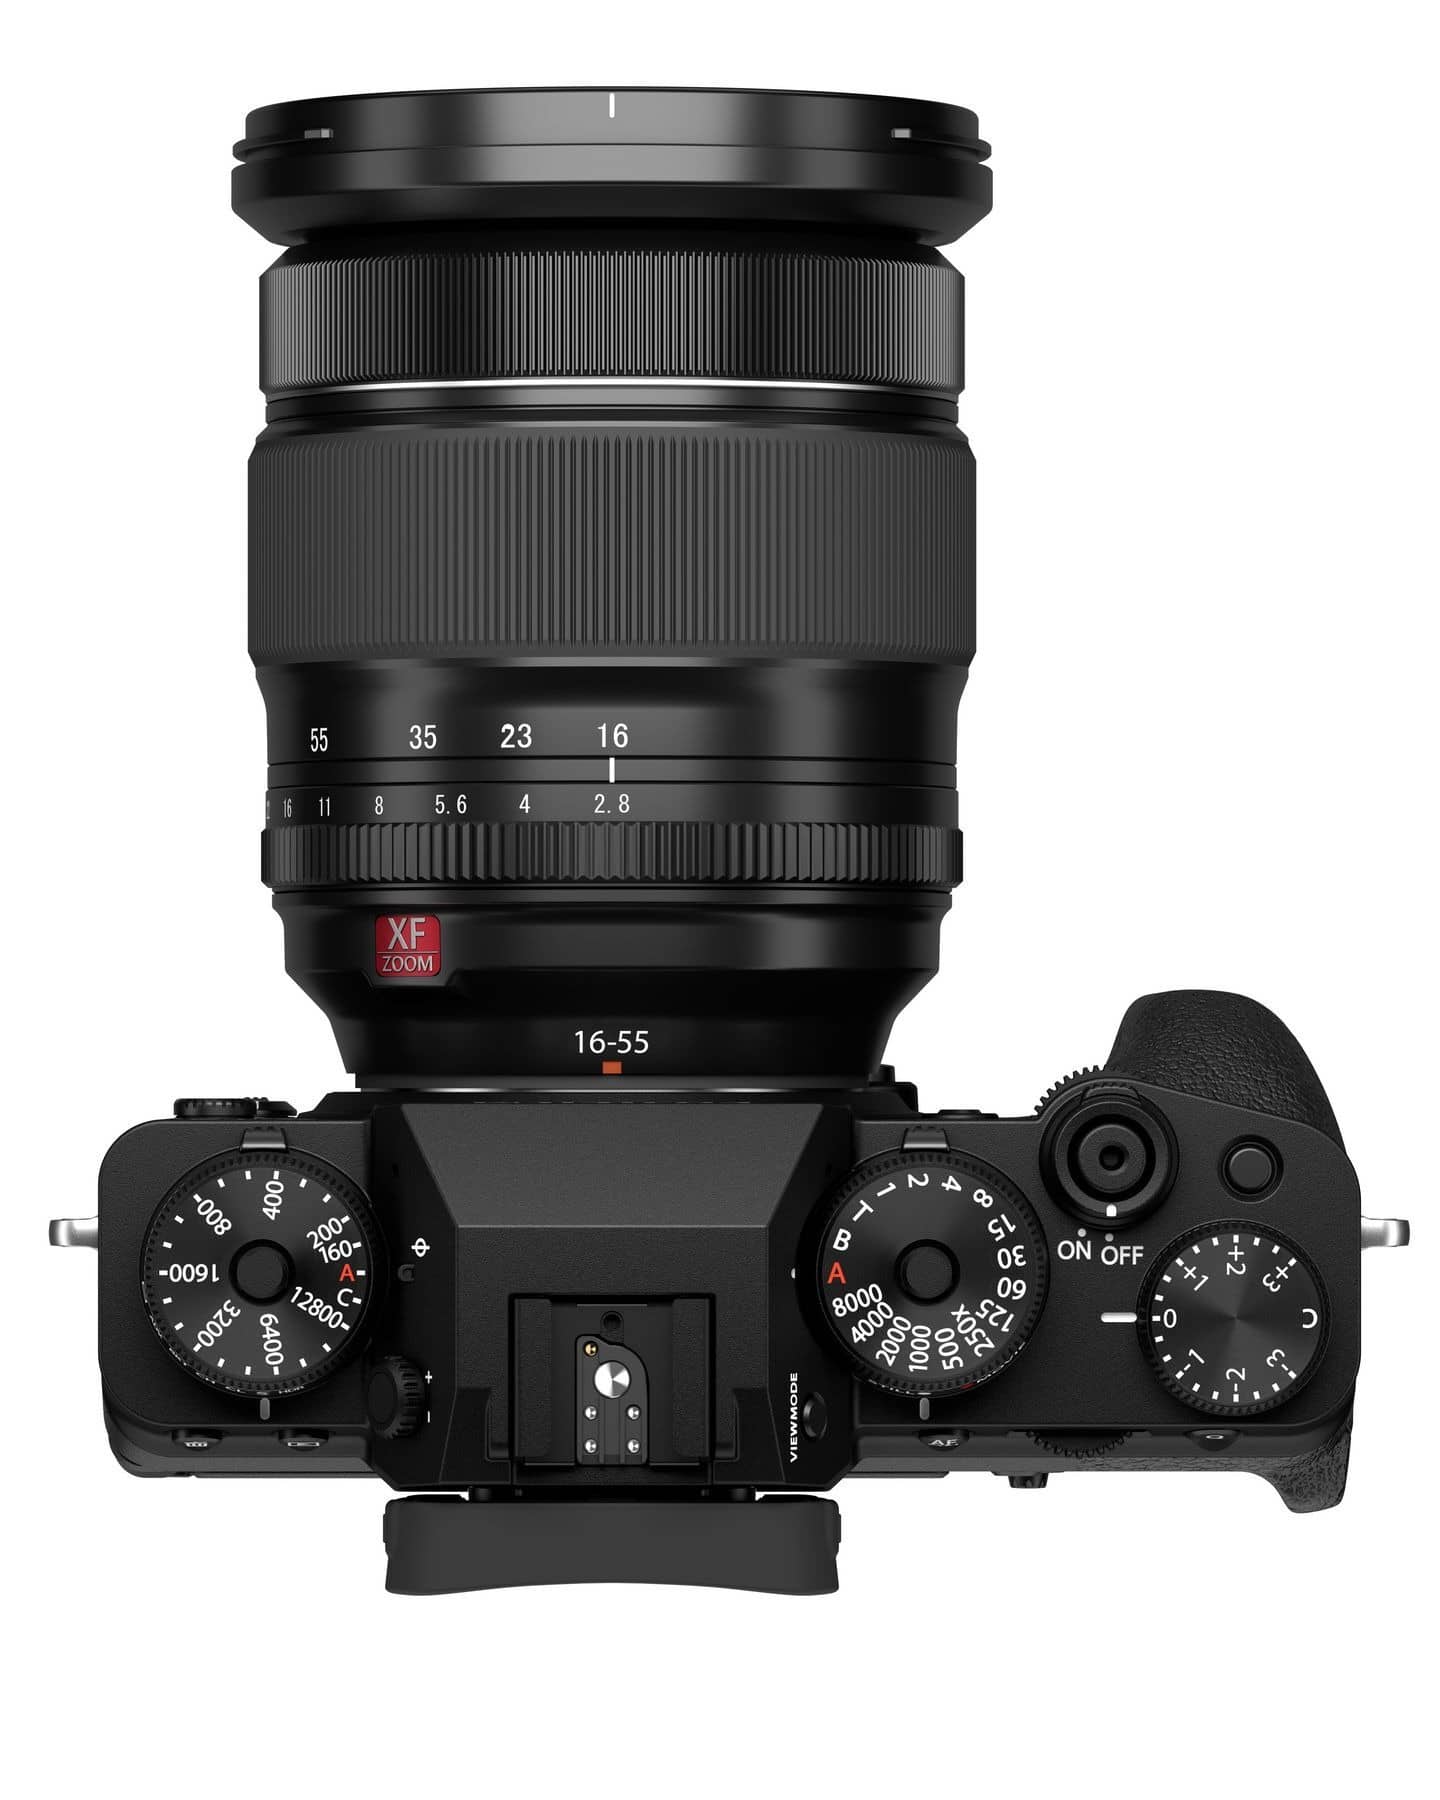 Fujifilm X-T4 aynasız kamera gövde içi sabitleme özelliğiyle geldi